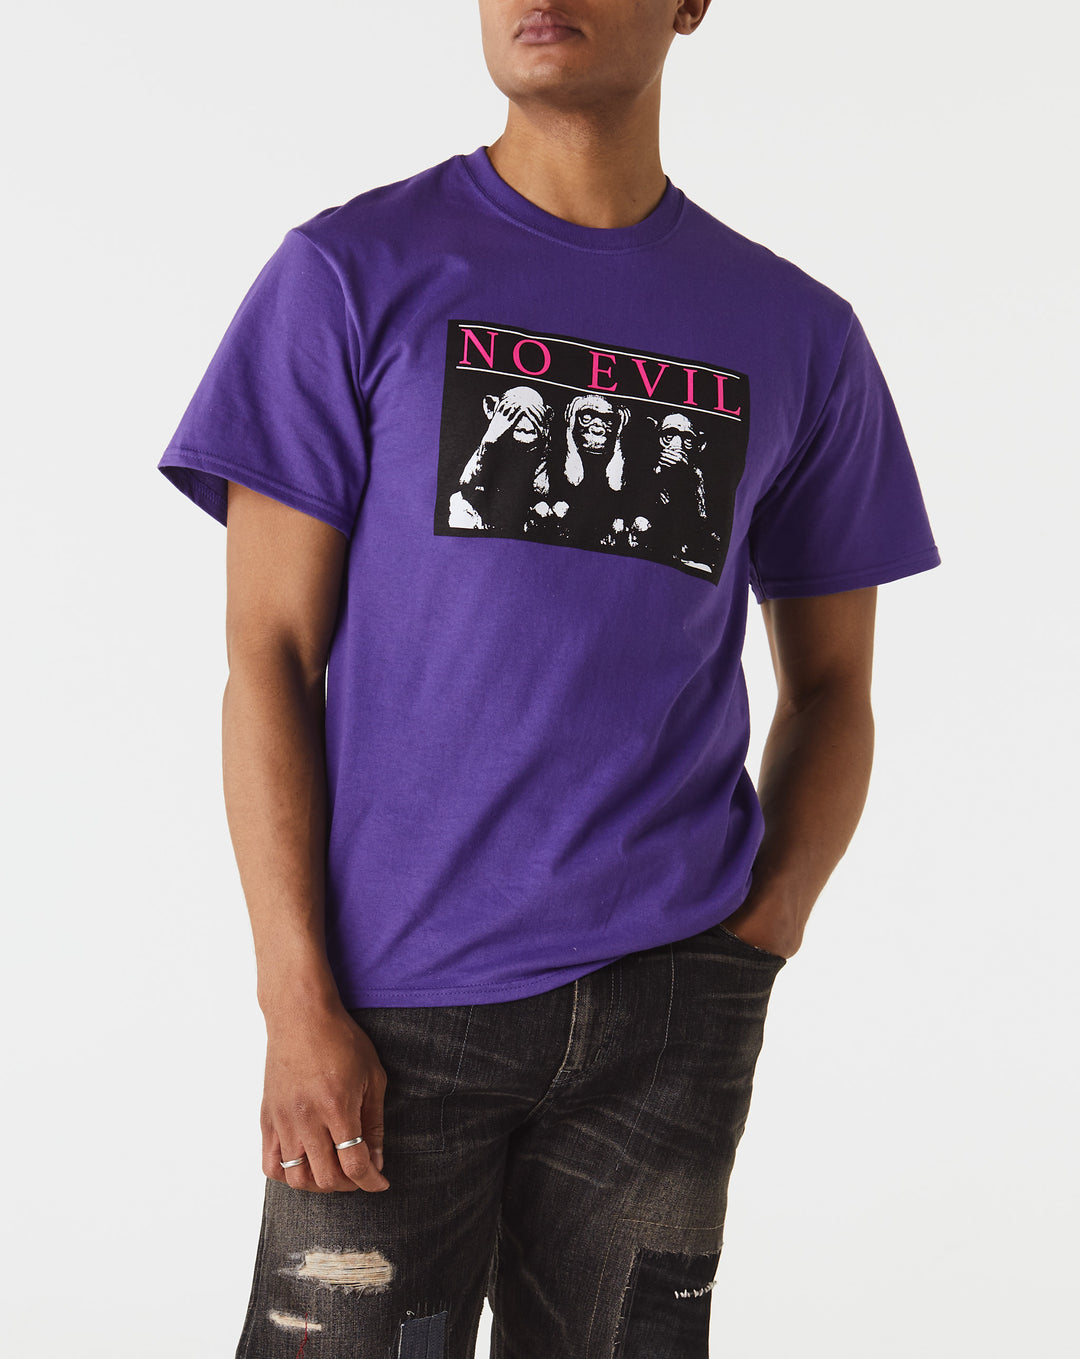 Noah No Evil T-Shirt  - XHIBITION